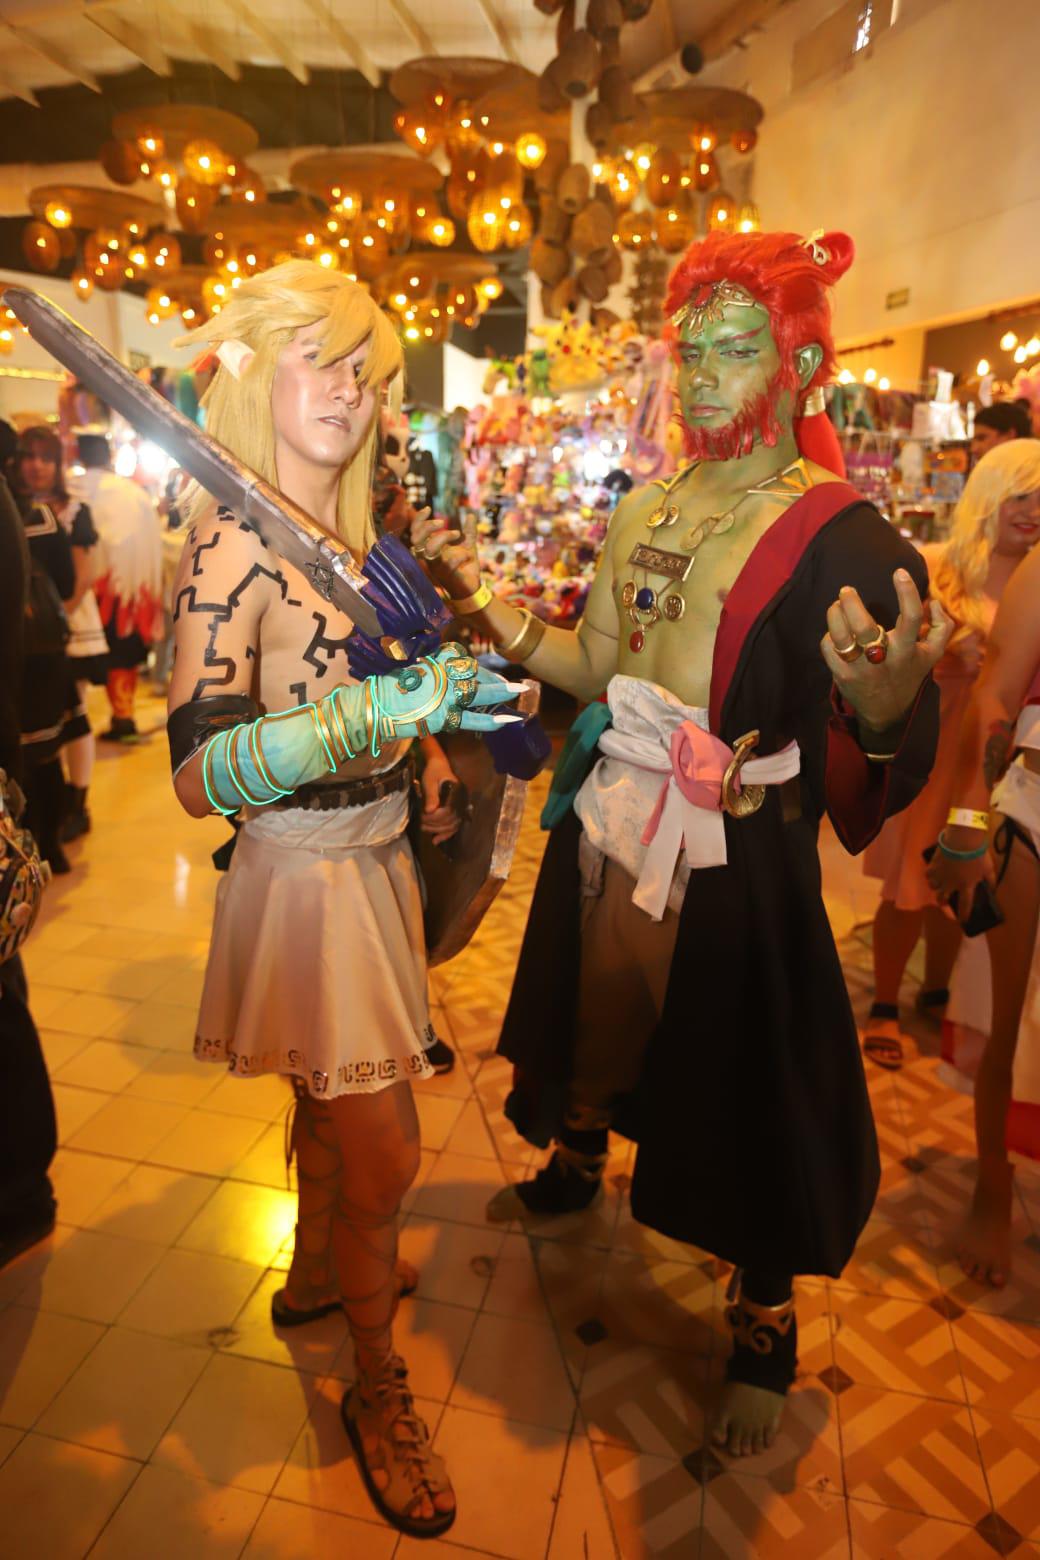 $!Sgialo (Link de Zelda) y Seiki Jolu (Ganondorf de Zelda)